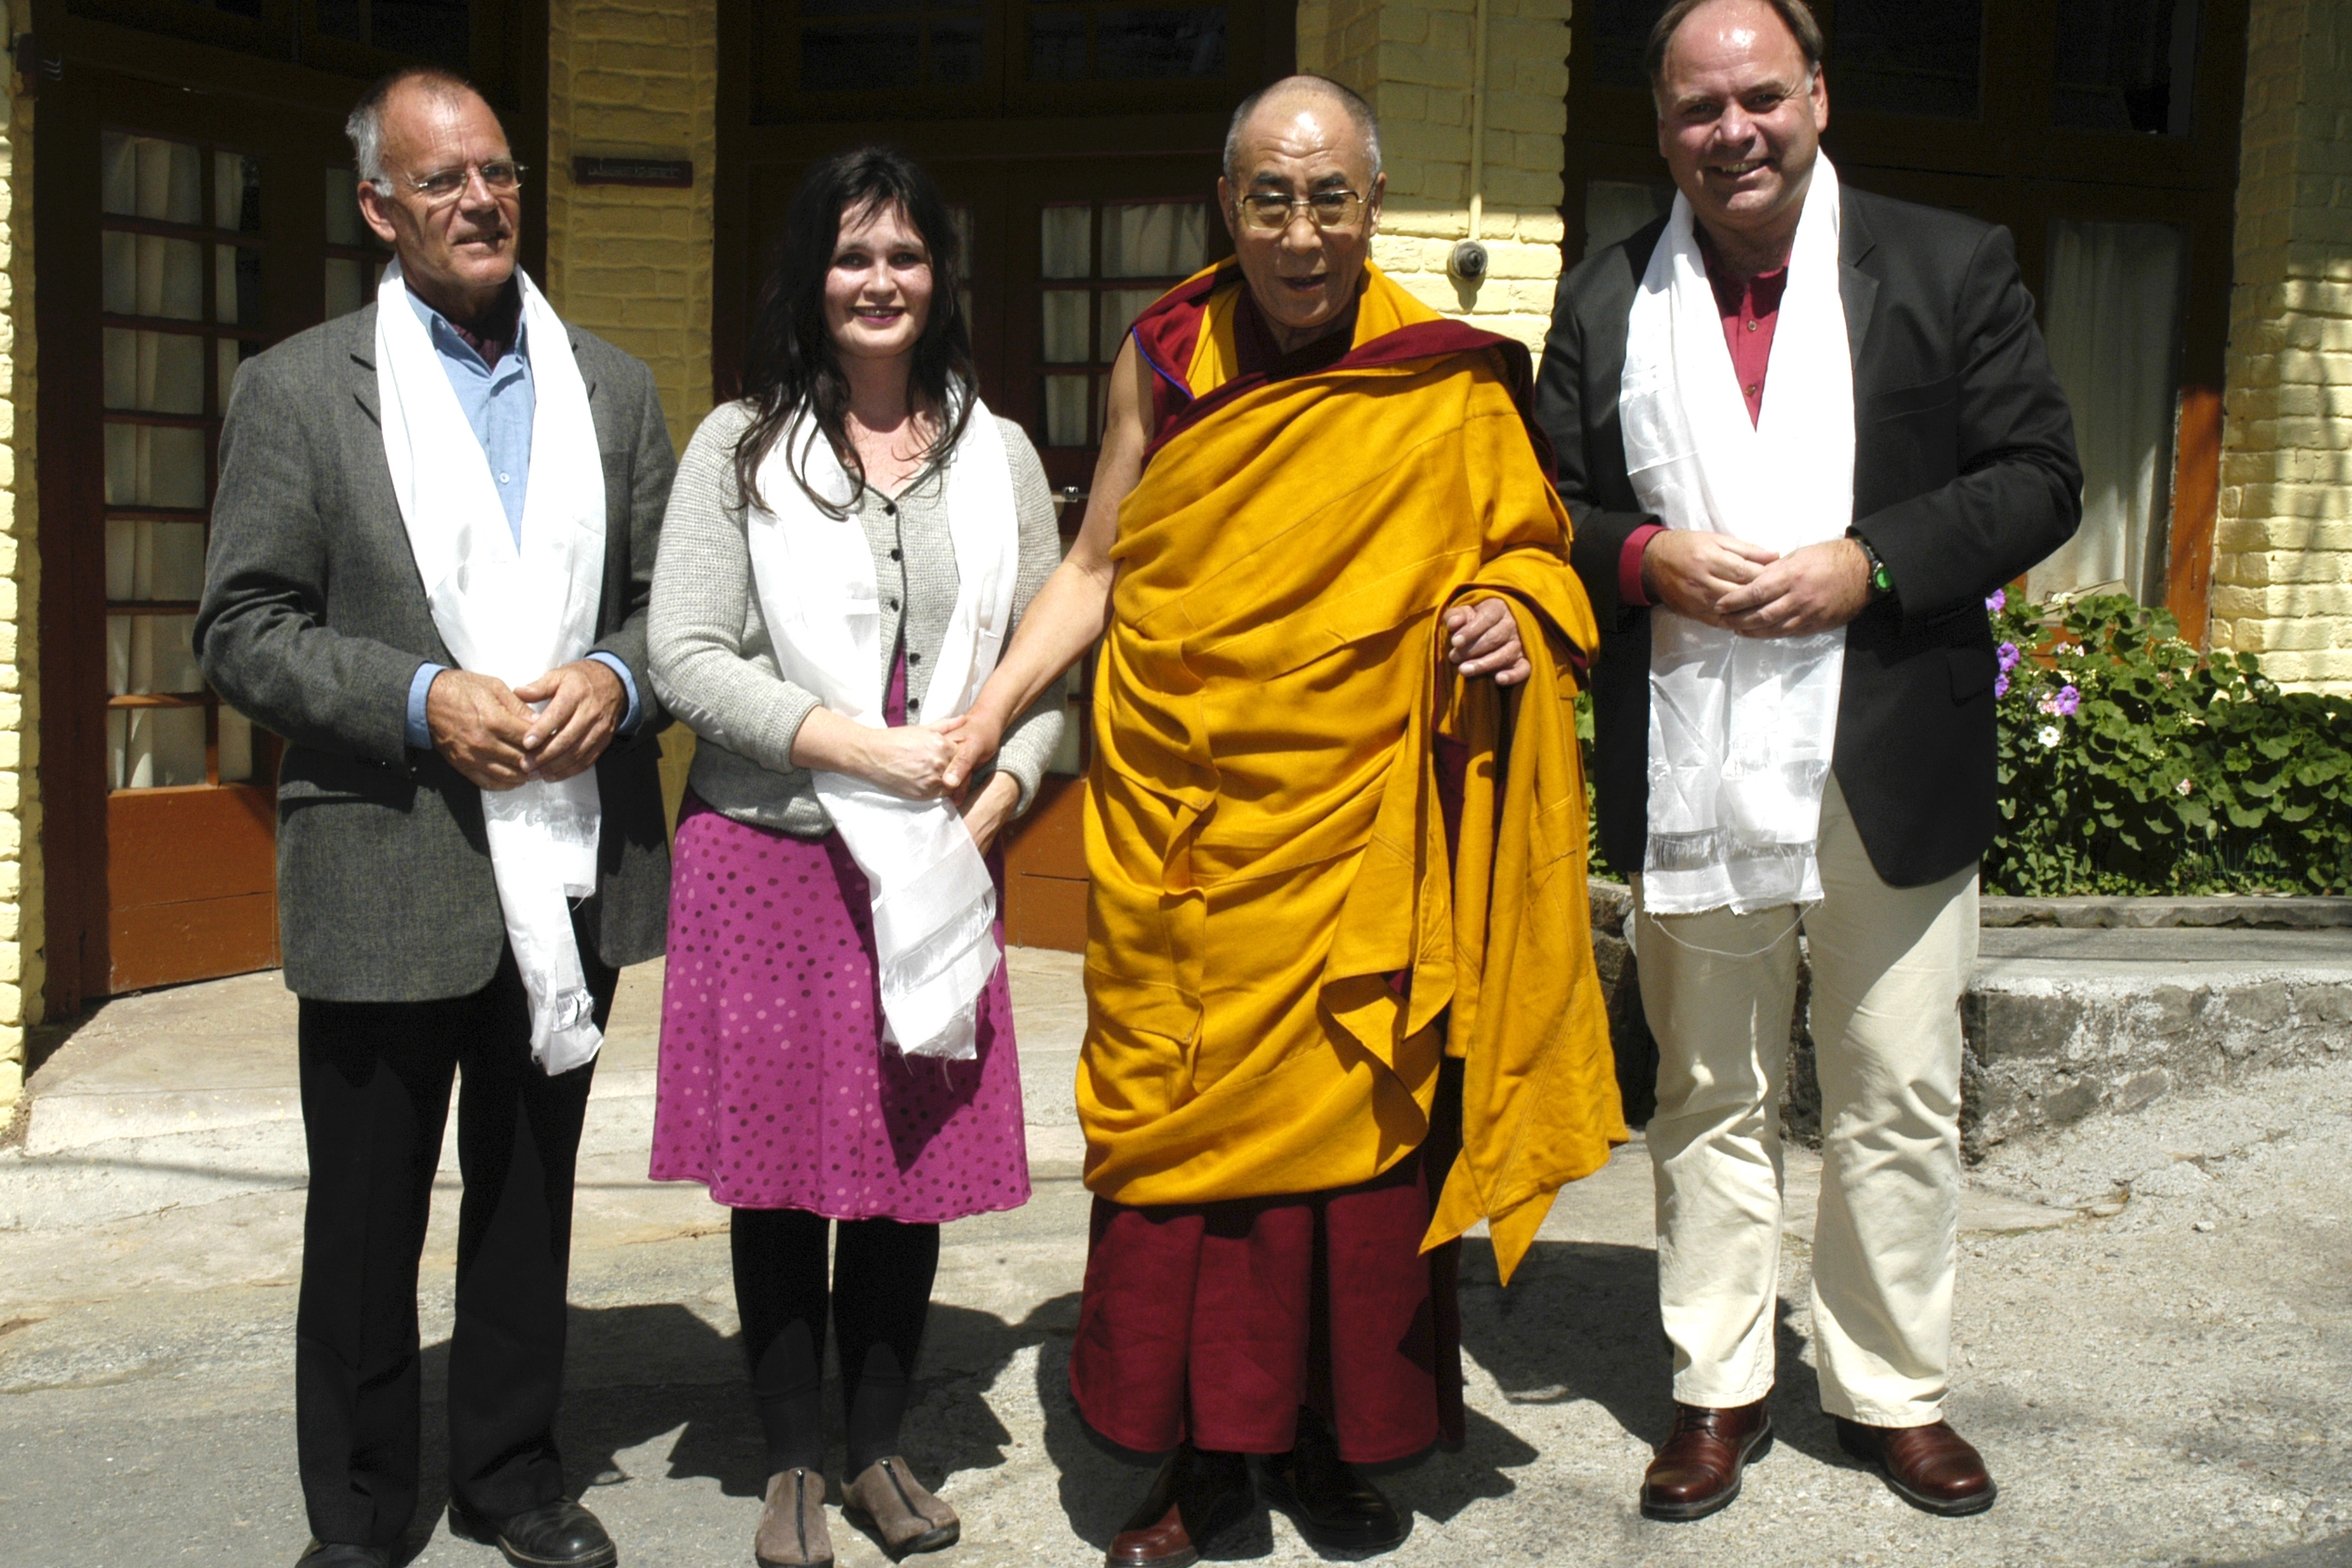   Og vi fikk møte Dhalai Lama!  